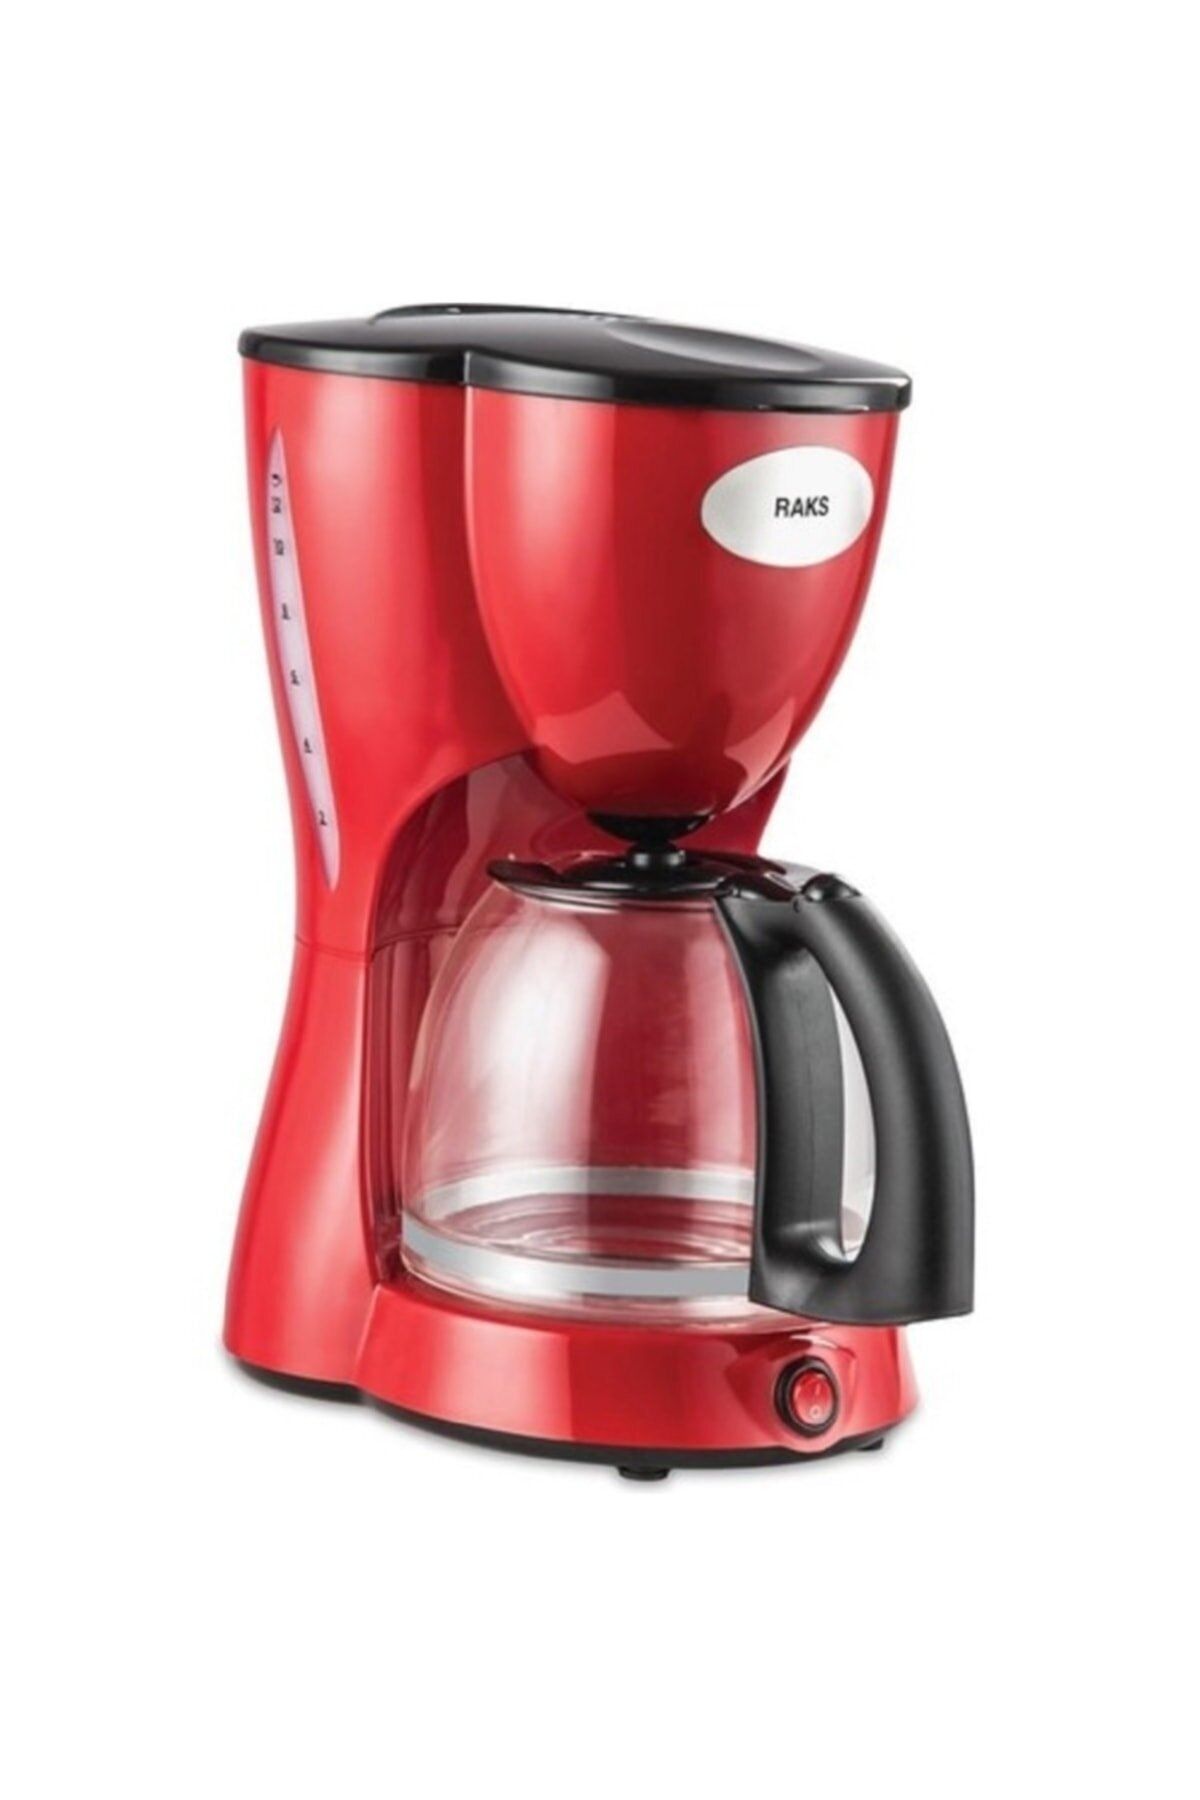 Raks Otomatik 1000 W 12 Fincan Filtre Kahve Makinesi Cam Hazne Kırmızı